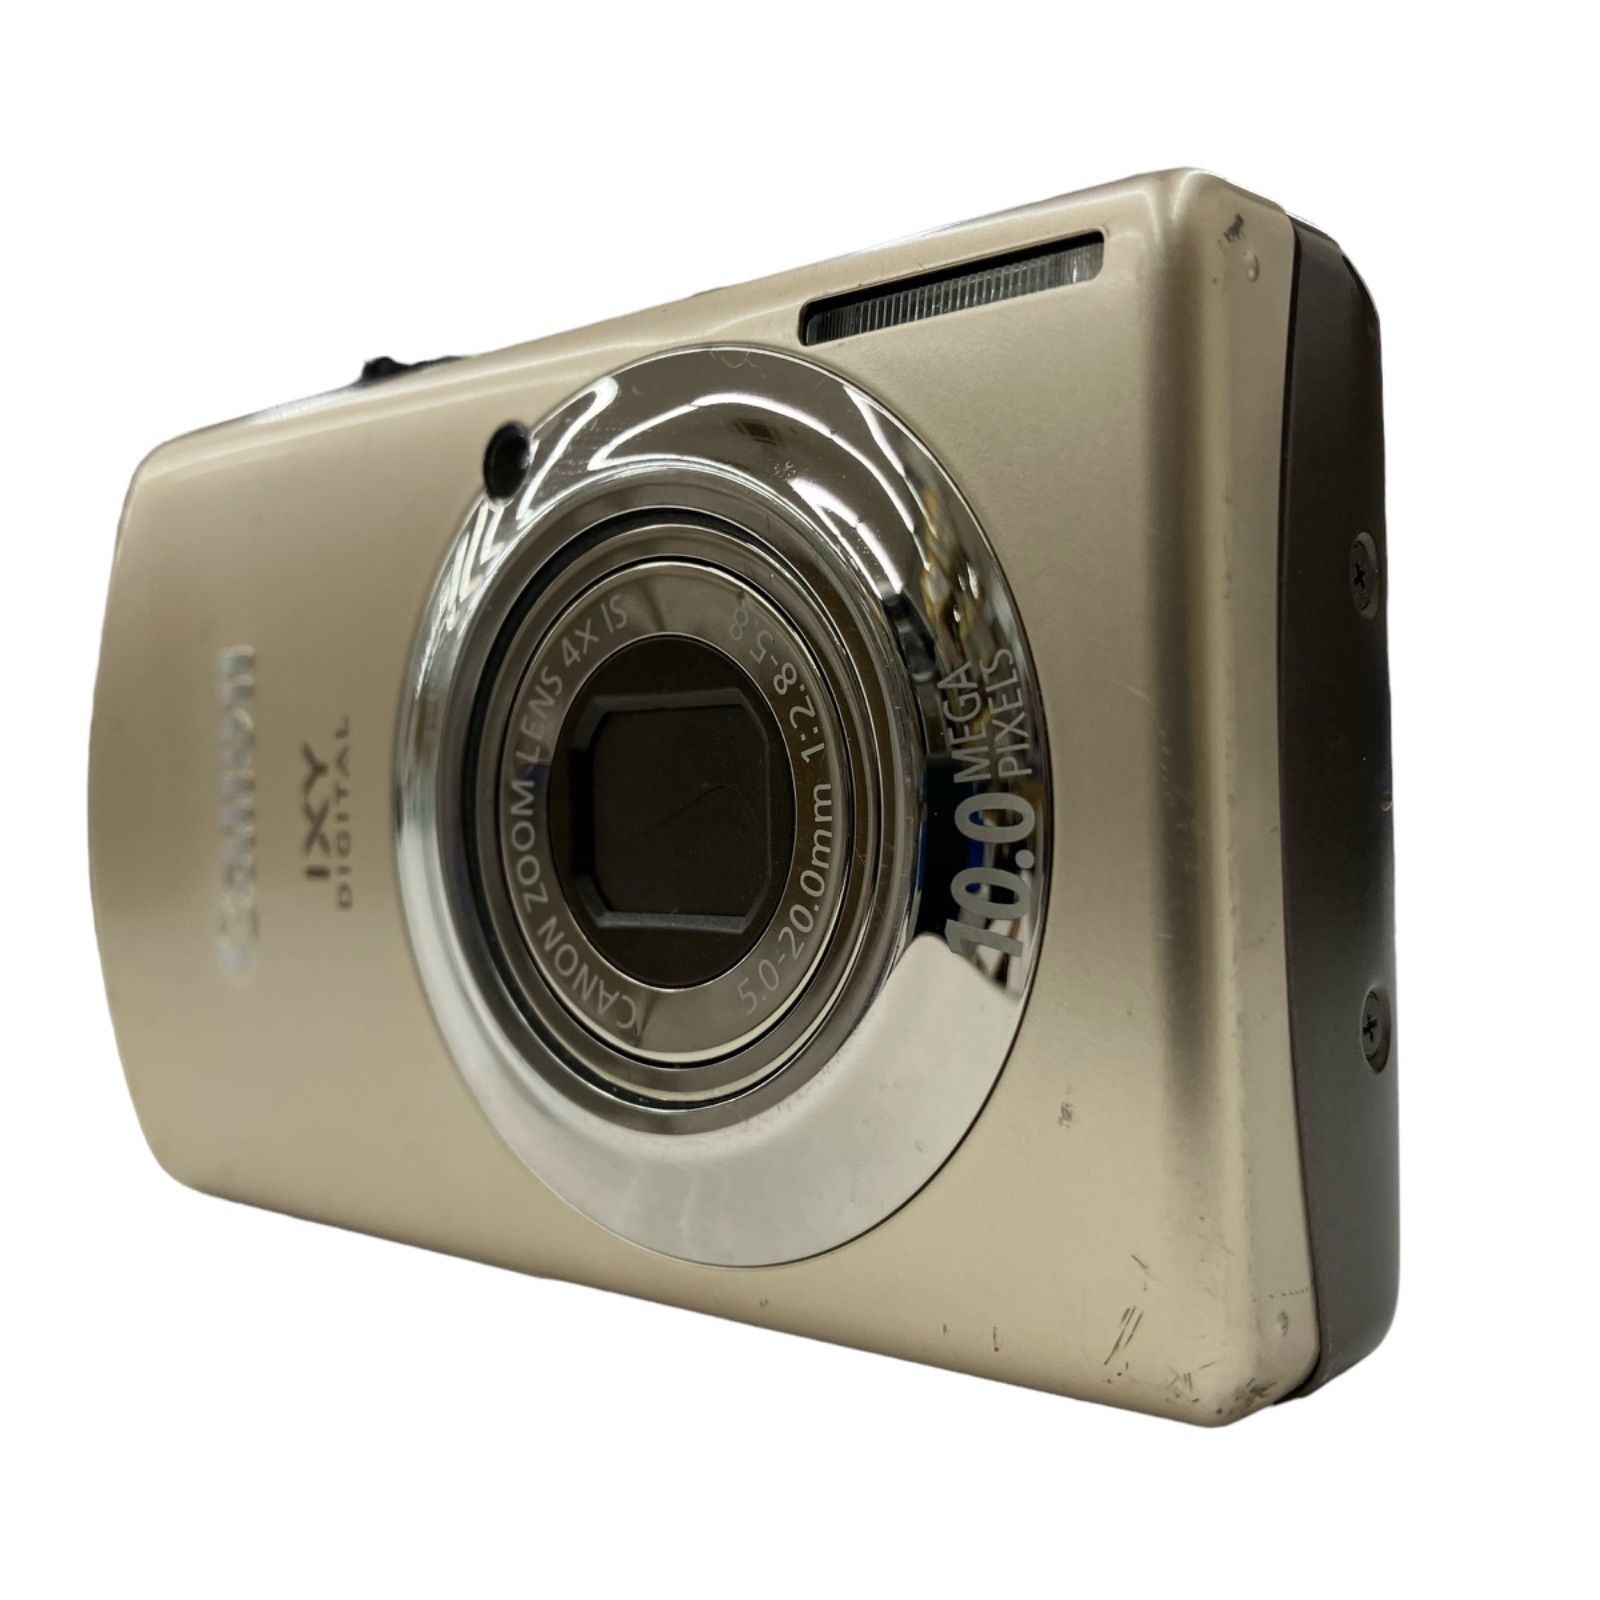 Canon IXY digital 920 IS（ゴールド）キャノン デジタルカメラ - メルカリ